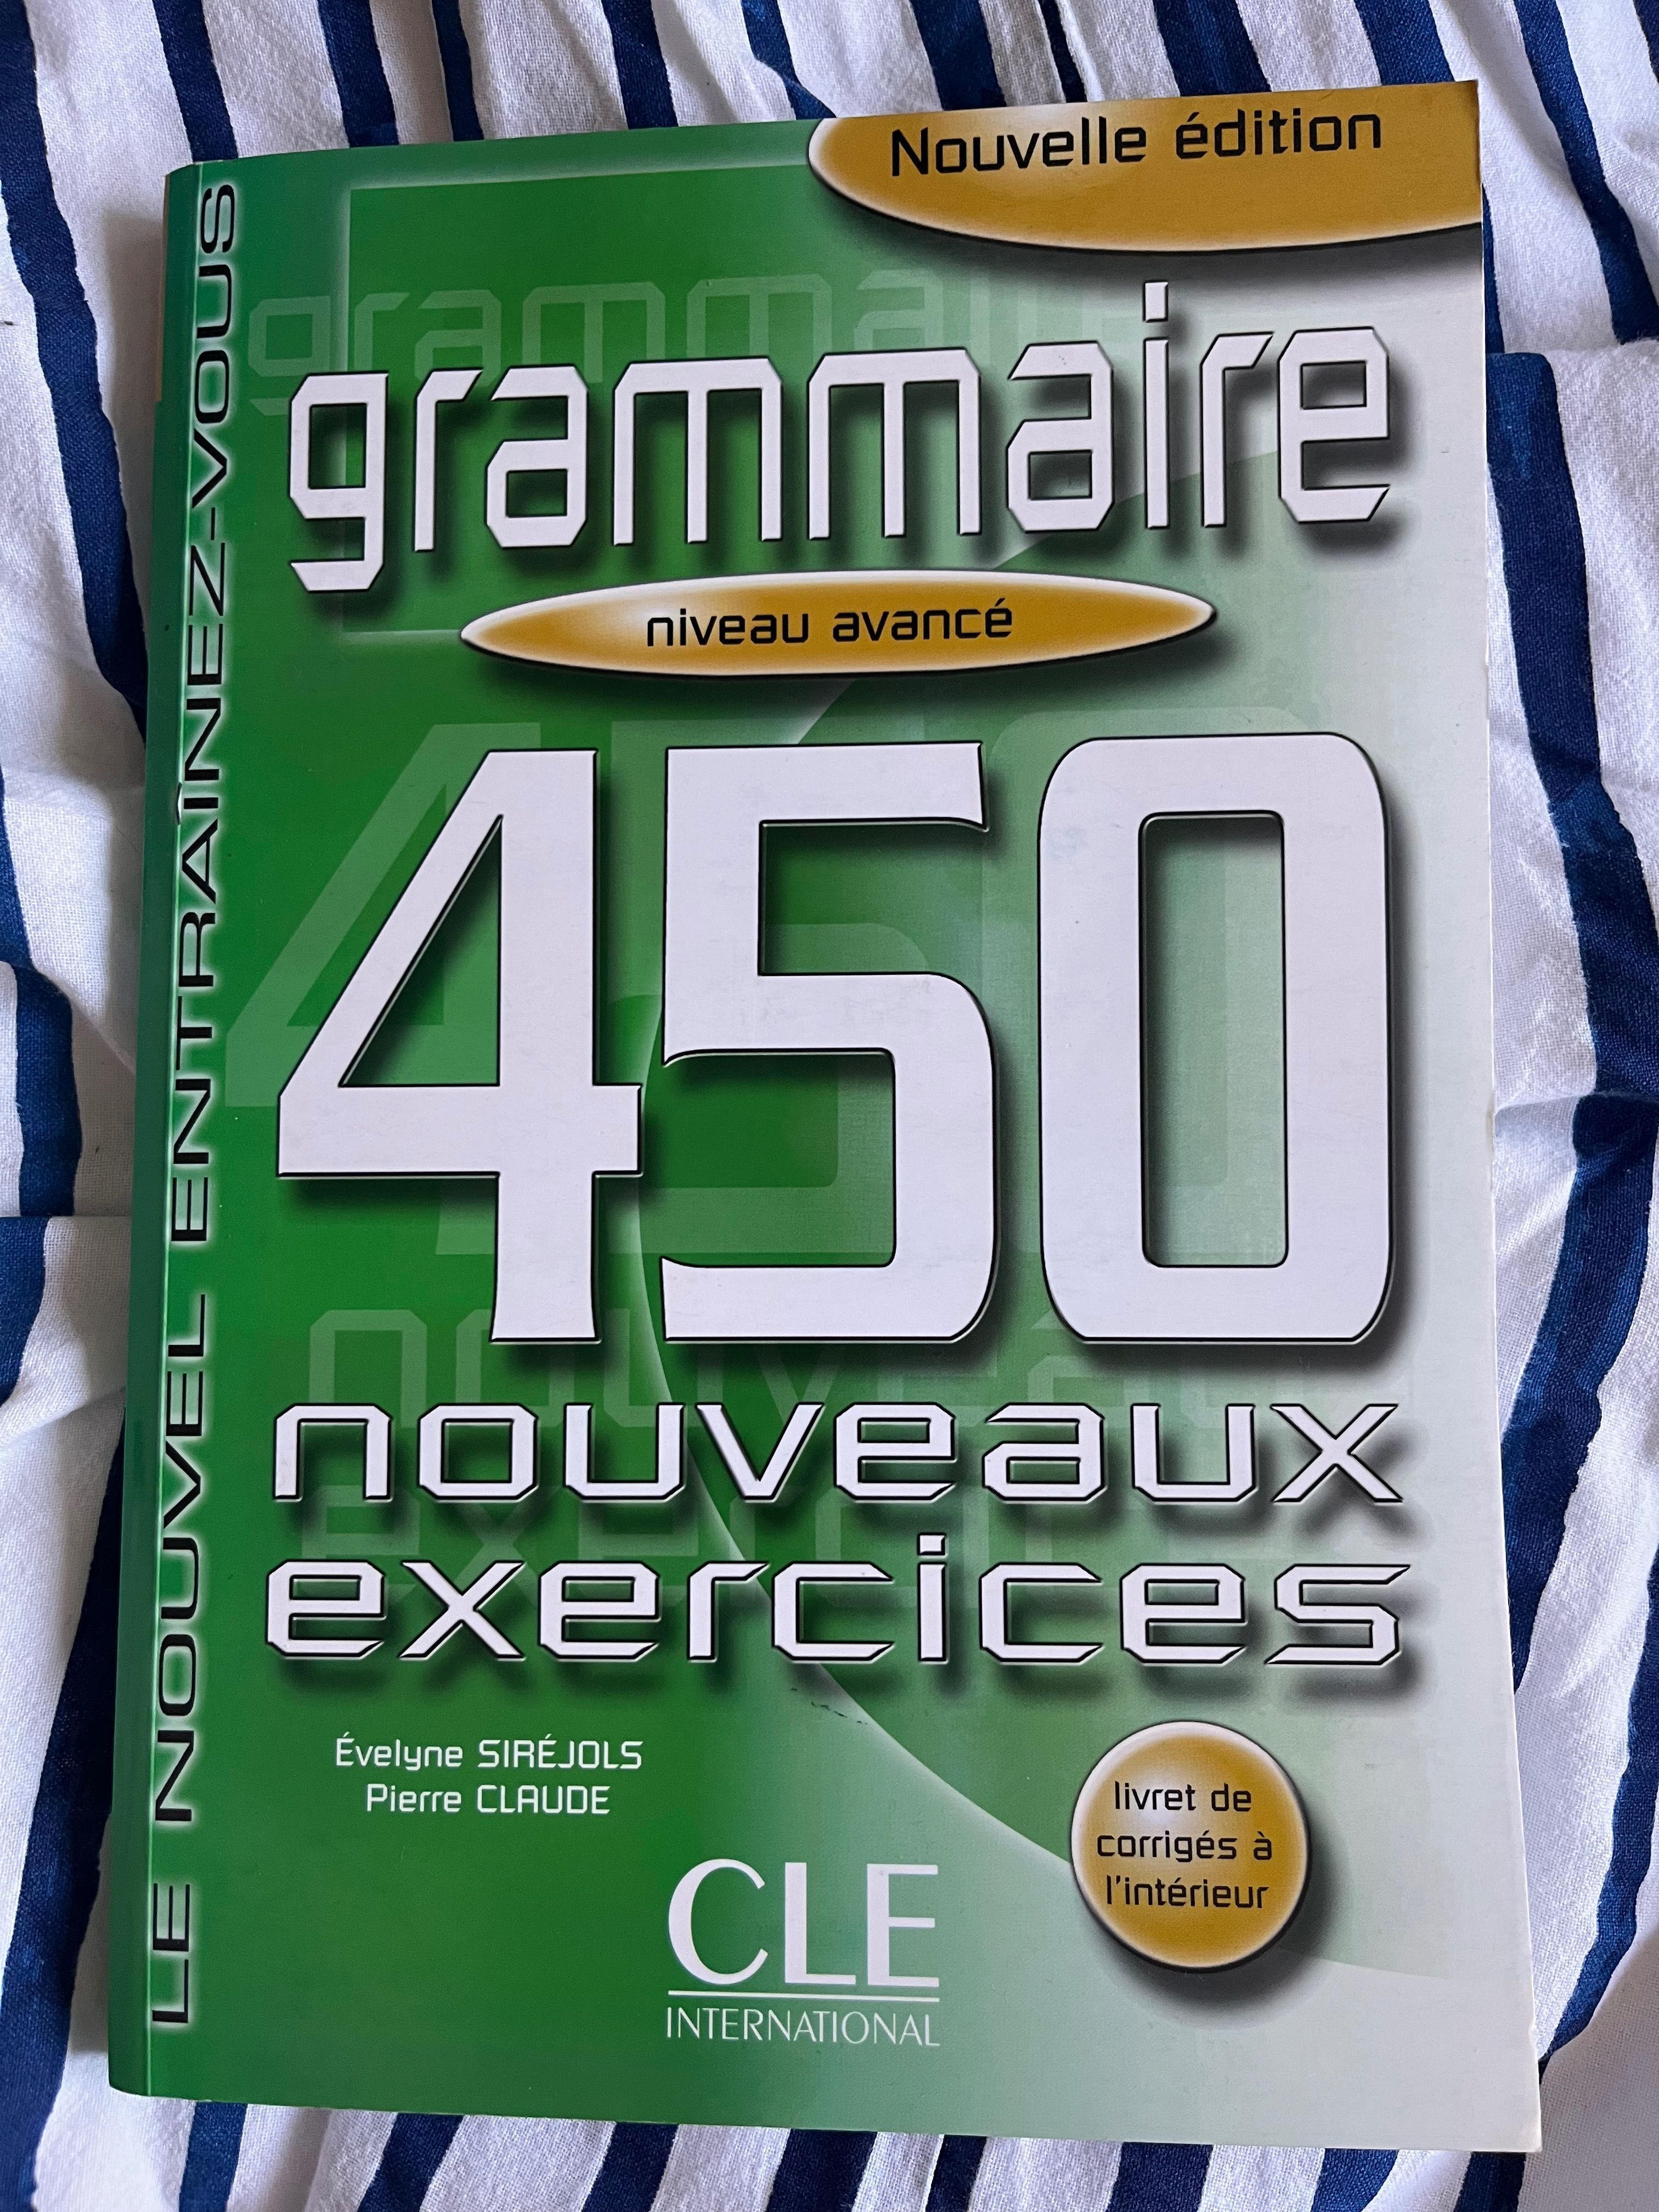 Grammaire - niveau avance - 450 nouveaux exercises